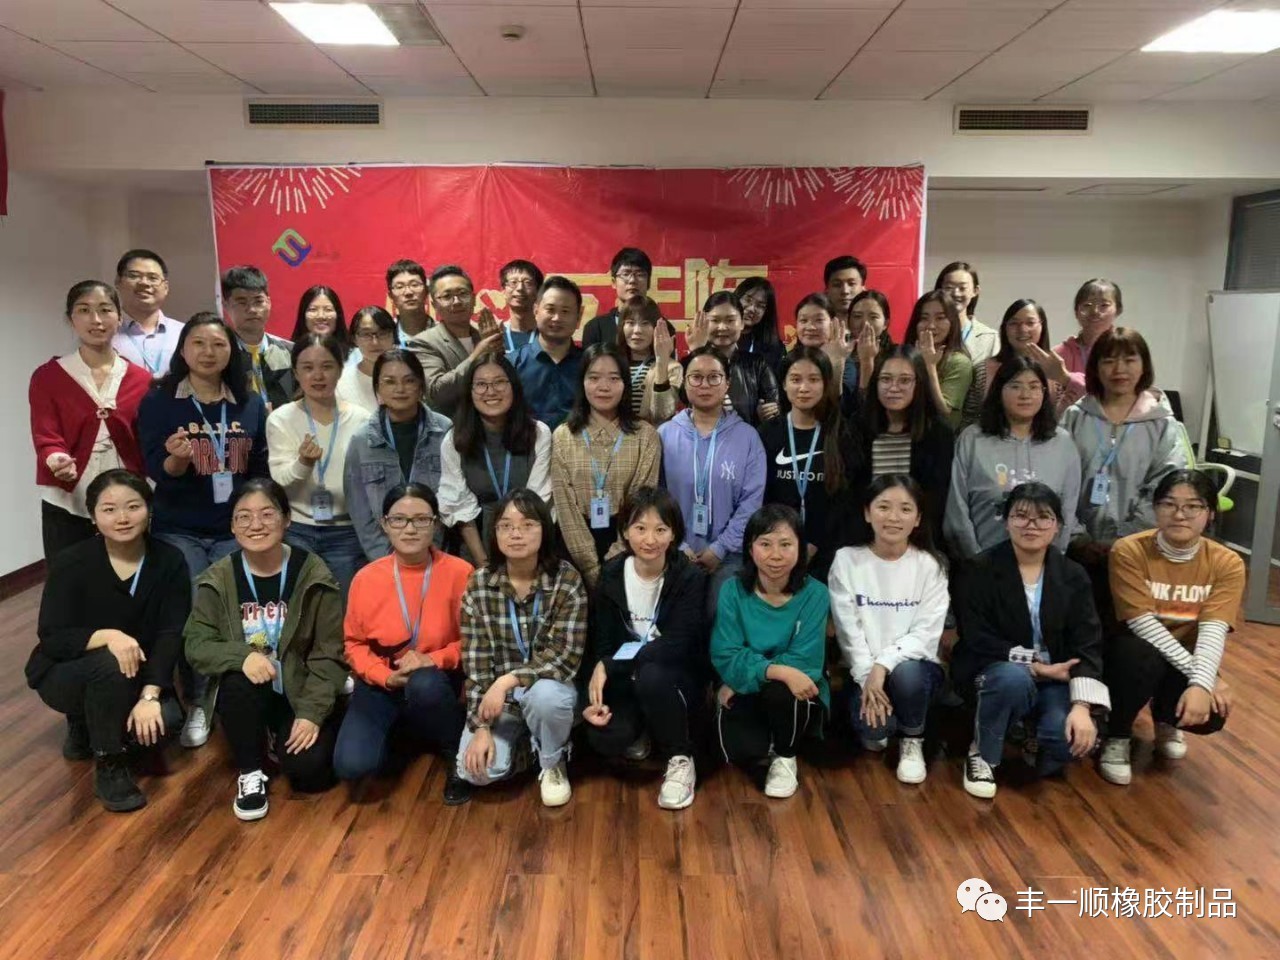 2019 Qingdao Florescence Third Quarter Summary and Fourth Quarter Plan